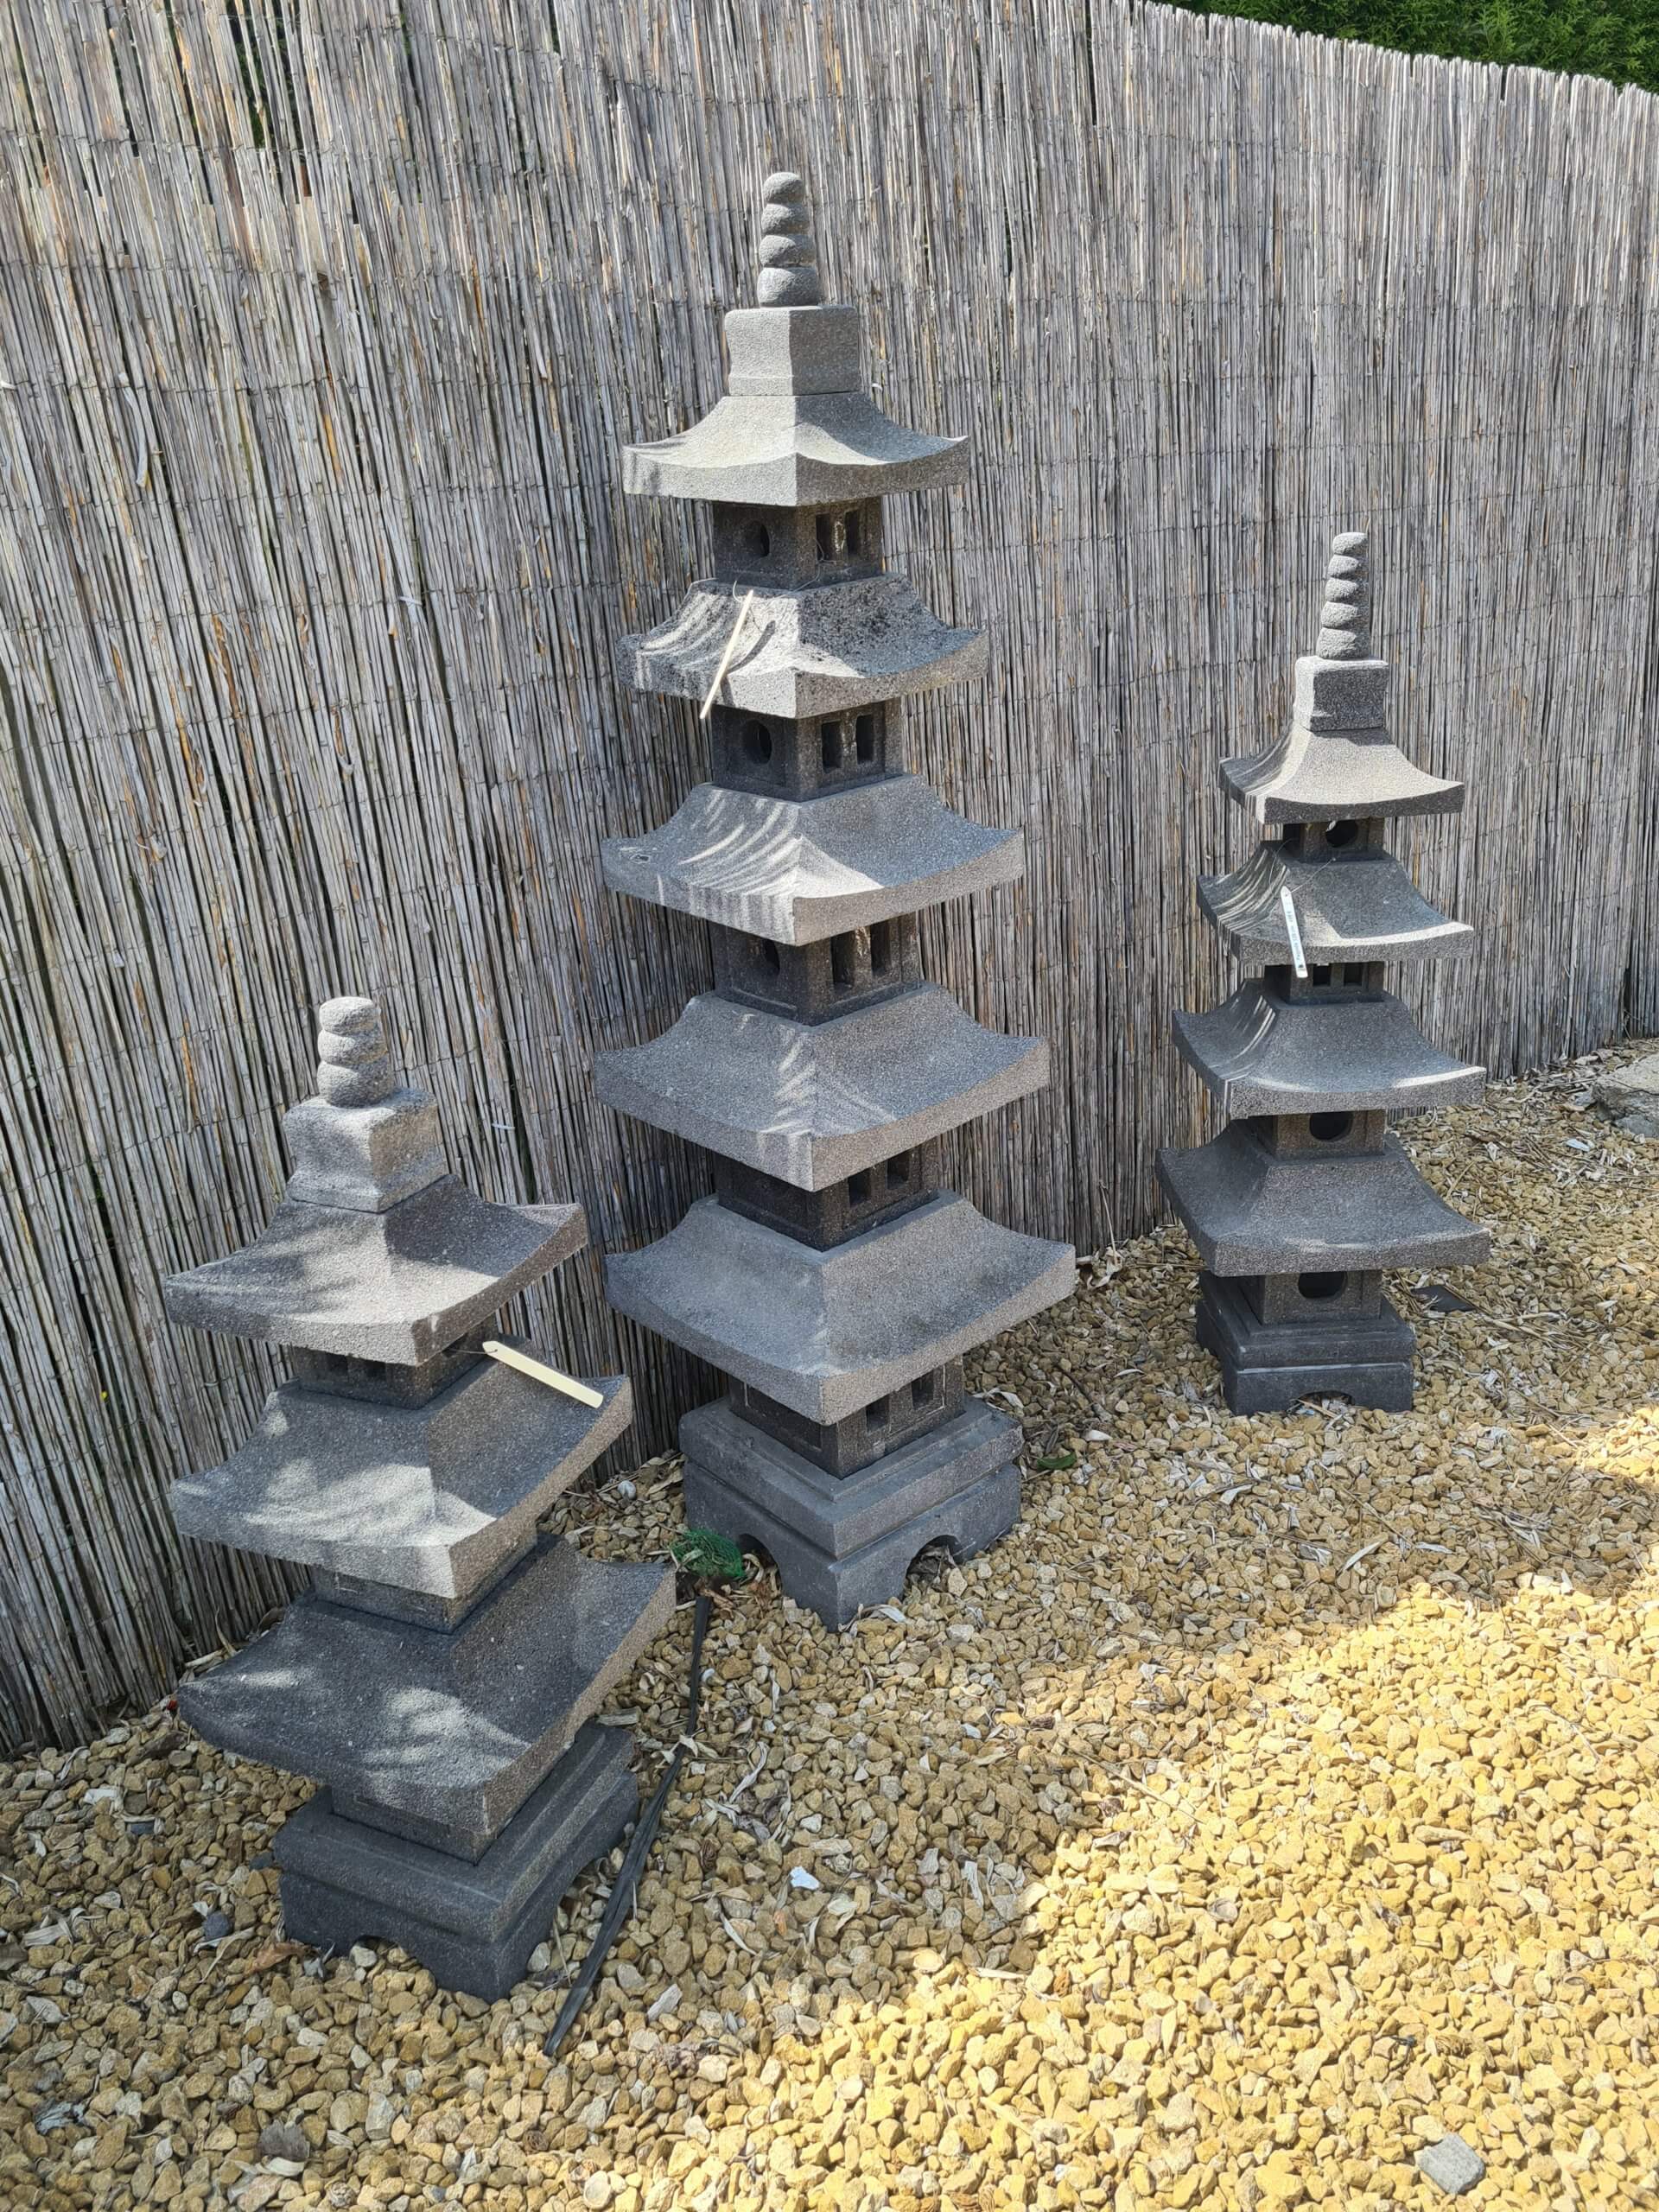 Lanterne japonaise pagode en pierre de lave de 80 cm